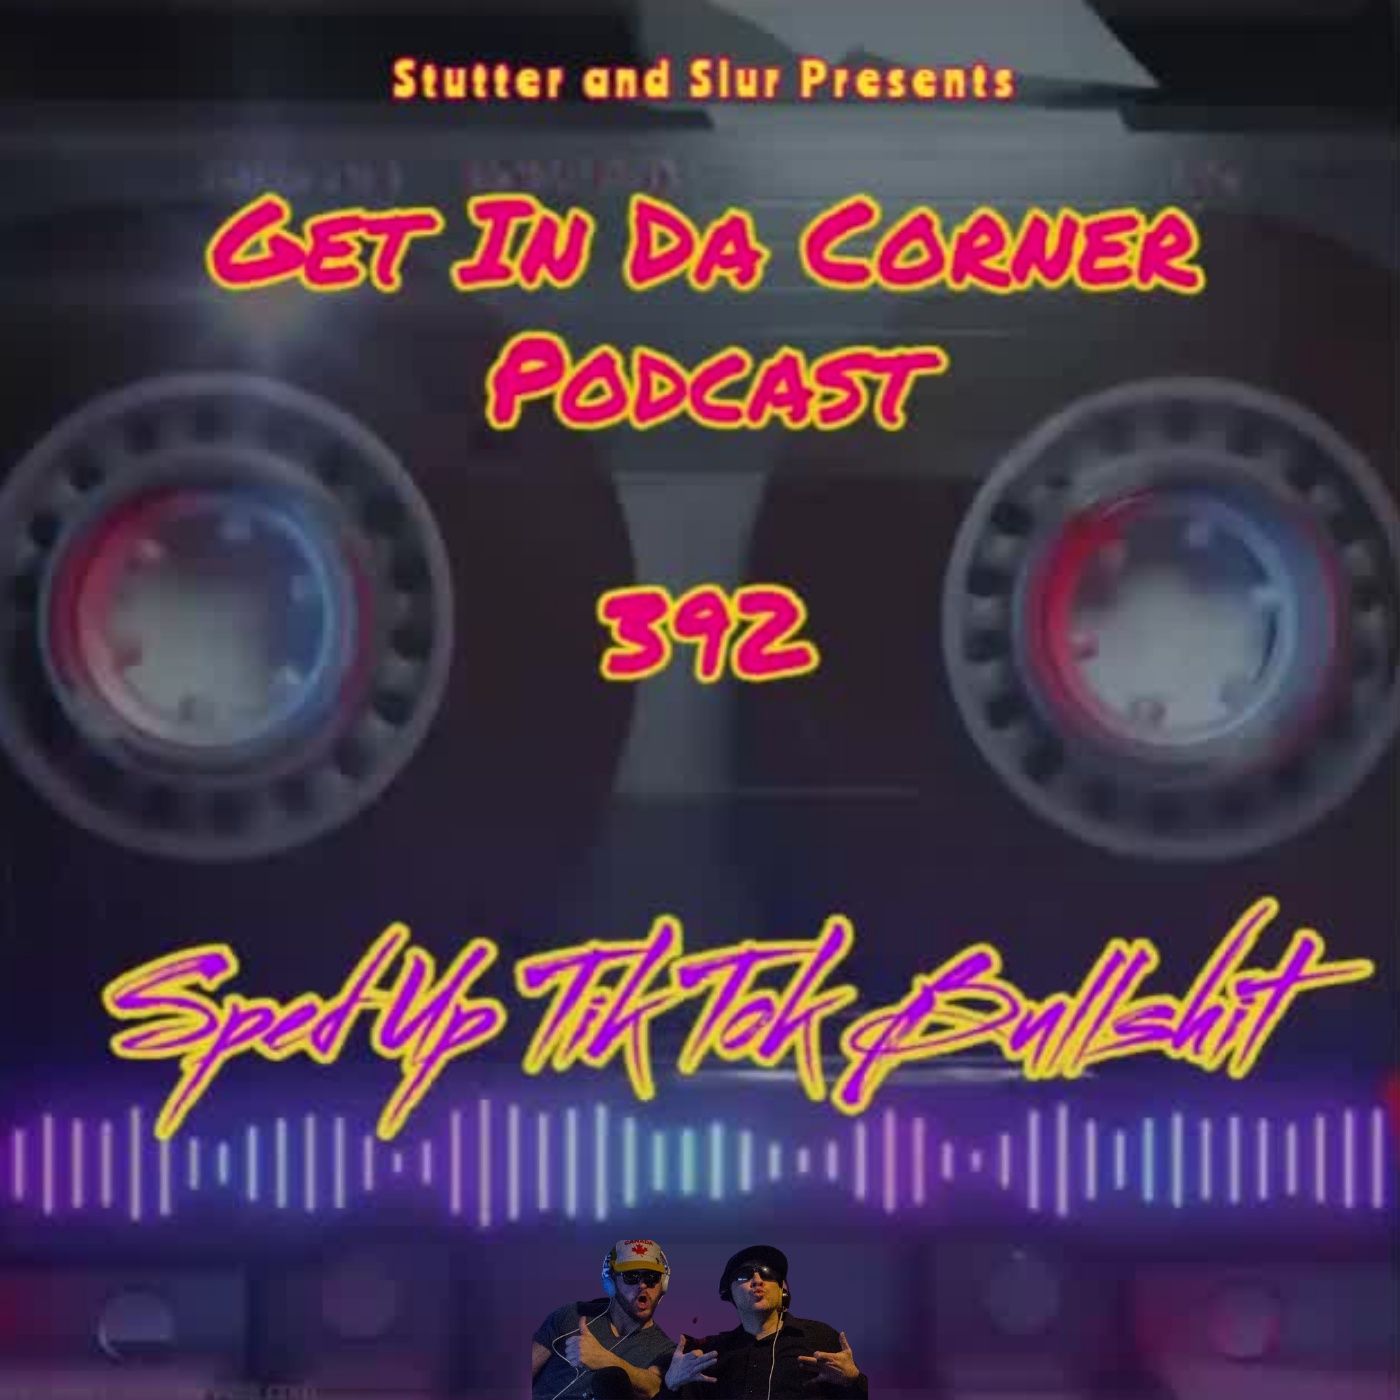 Get In Da Corner podcast 392   SPED UP TIK TOK BULLSHIT